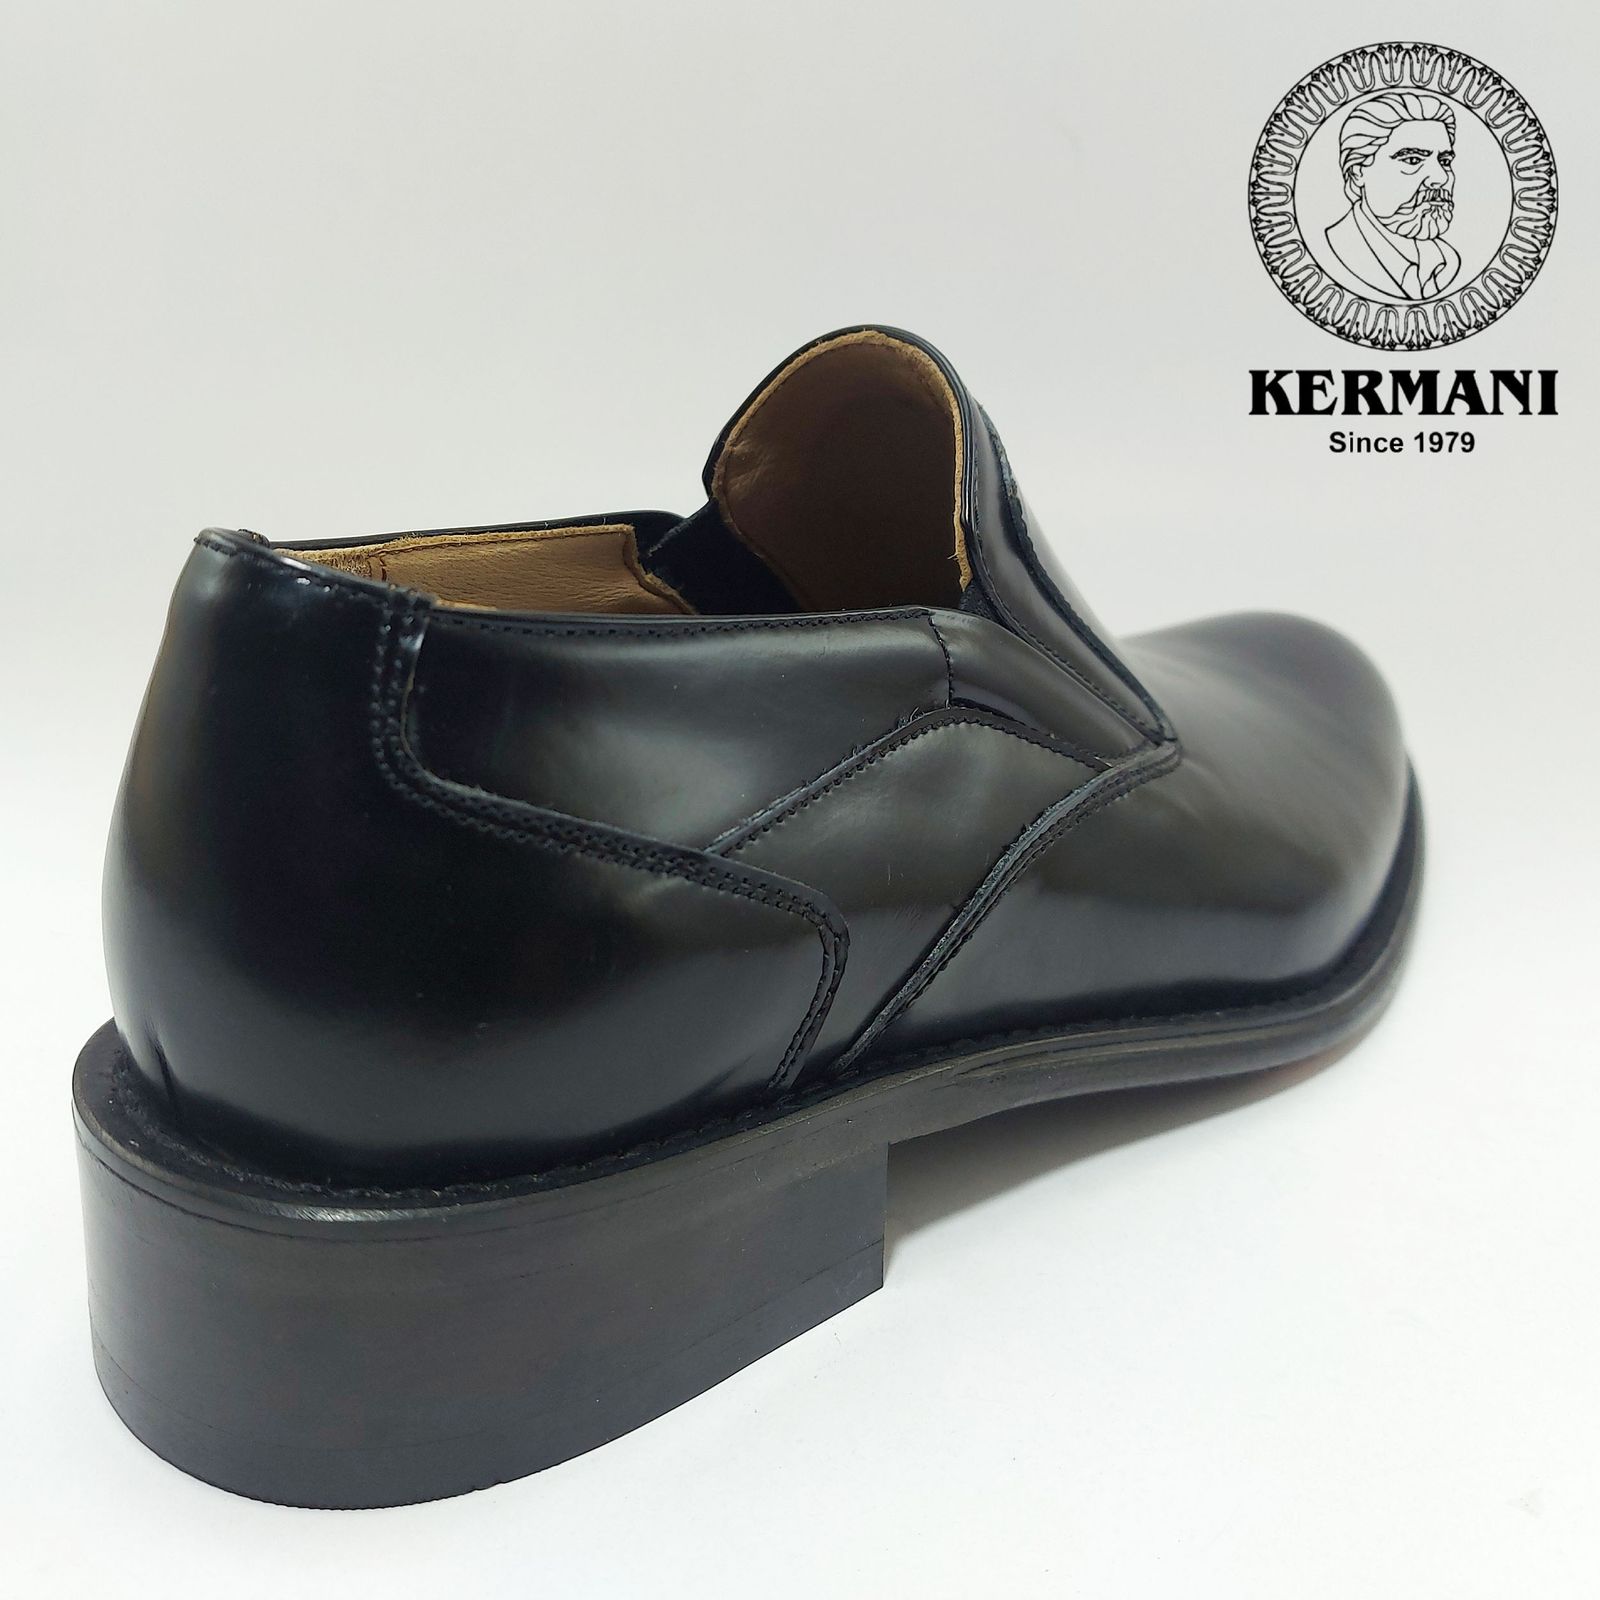 کفش مردانه کرمانی مدل تمام چرم طبیعی بروشاو دستدوز کد 350 رنگ مشکی -  - 2